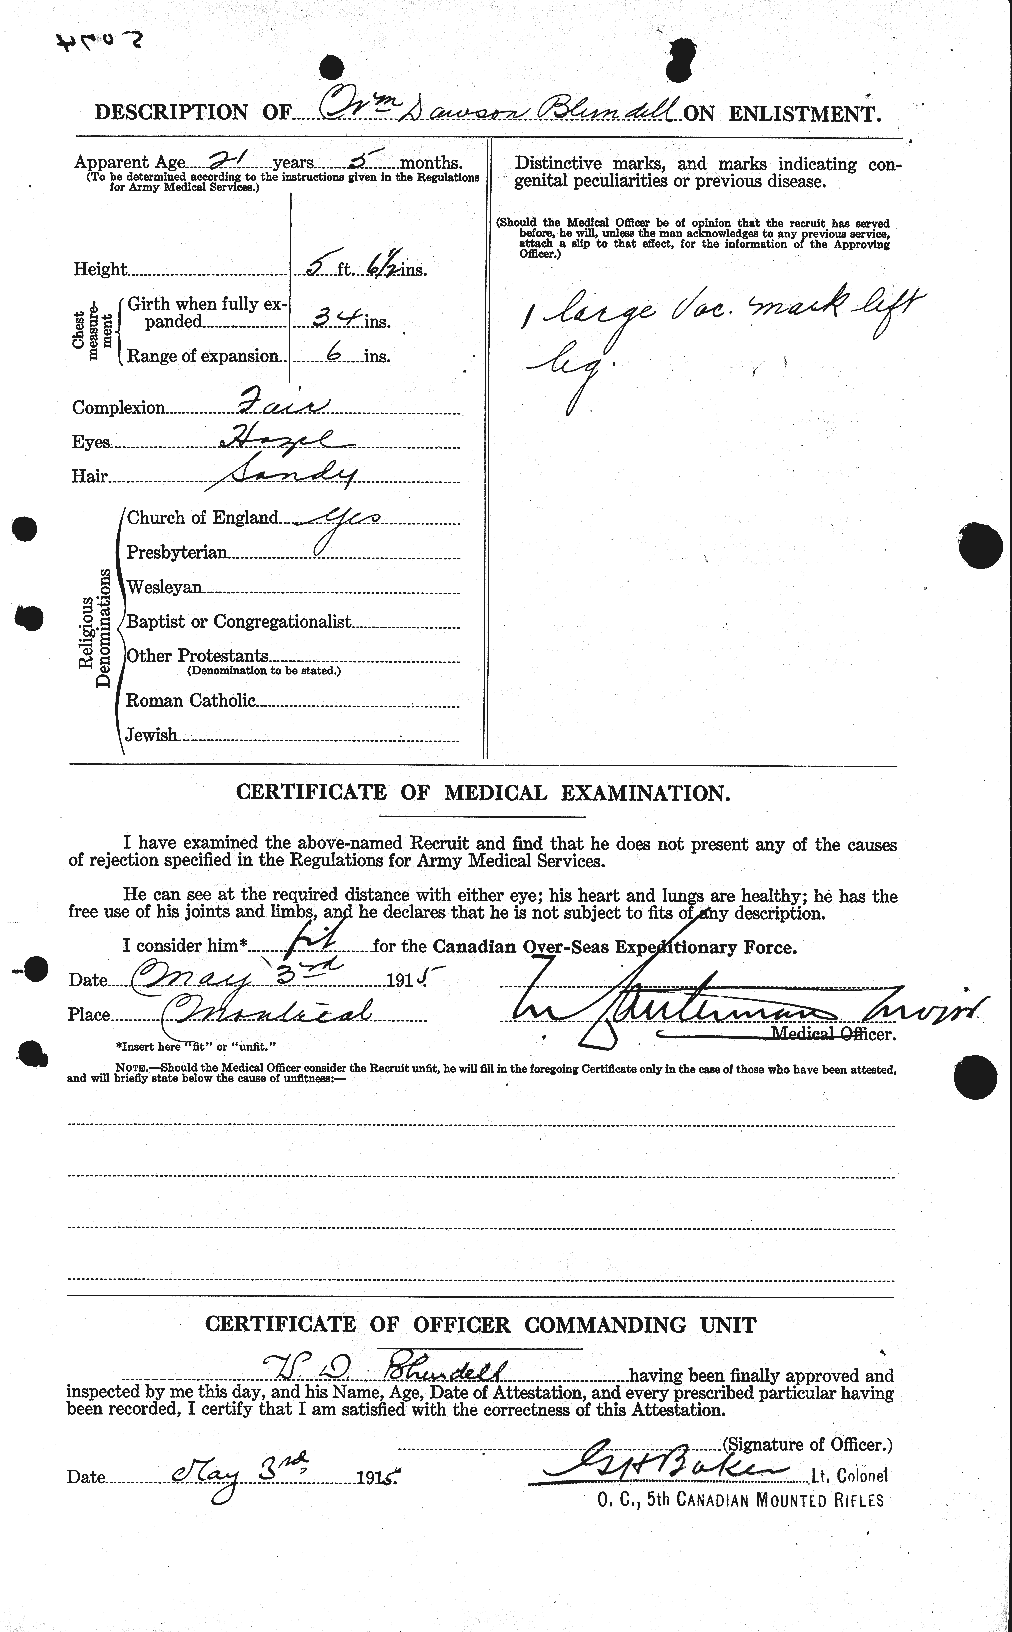 Dossiers du Personnel de la Première Guerre mondiale - CEC 247210b